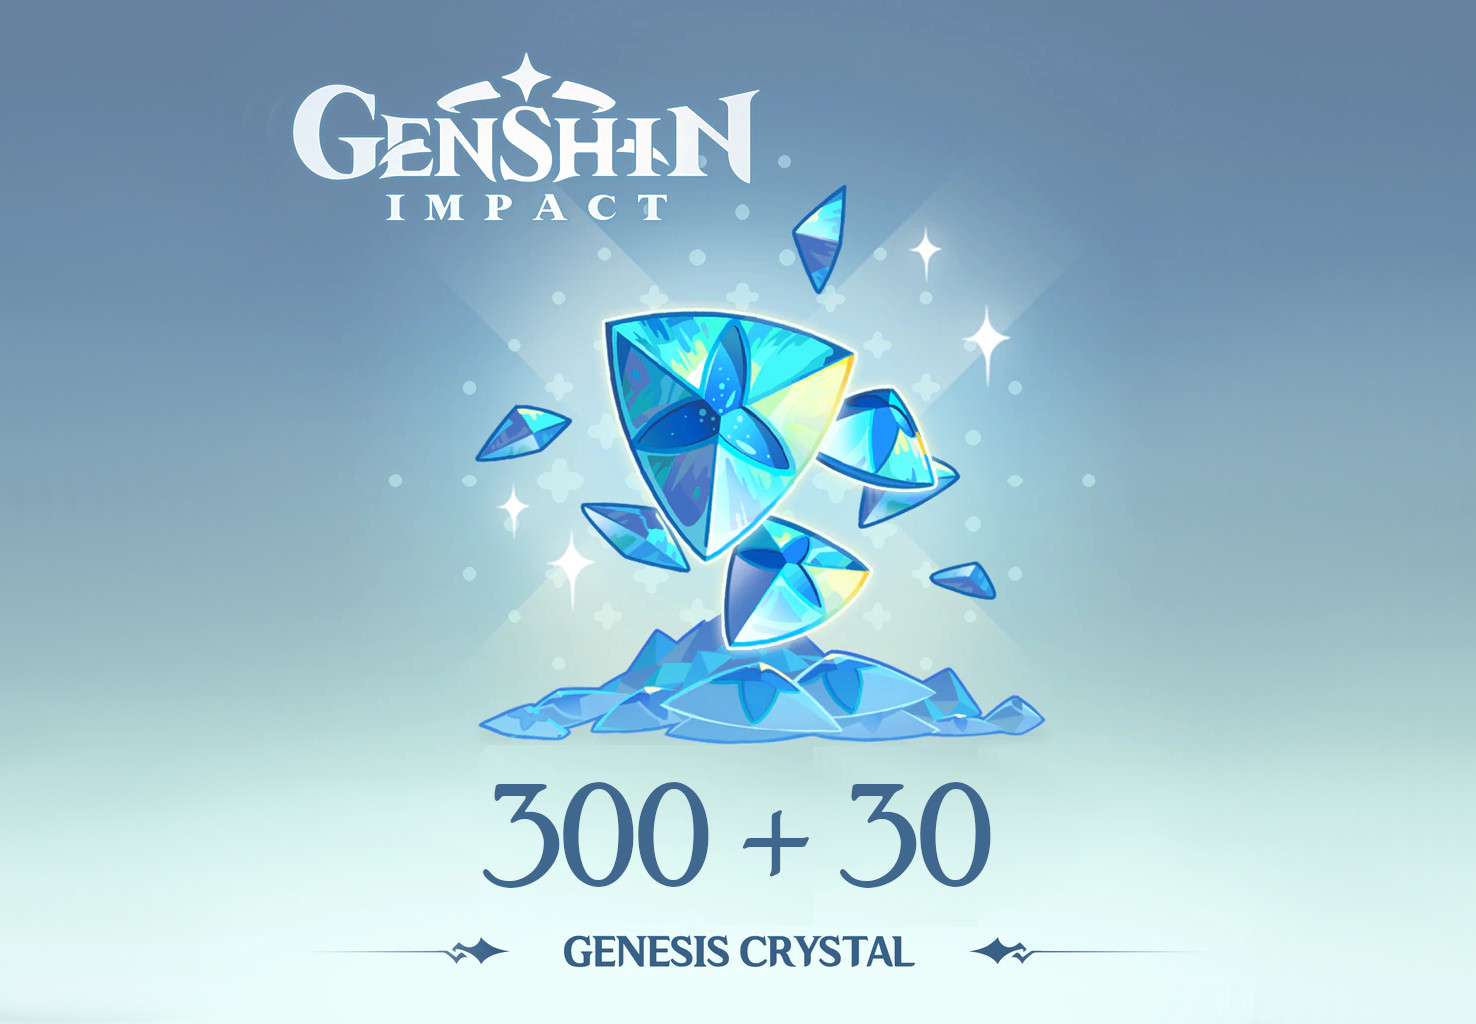 Genshin Impact - 300 + 30 Genesis Crystals Reidos Voucher 5.37 USD